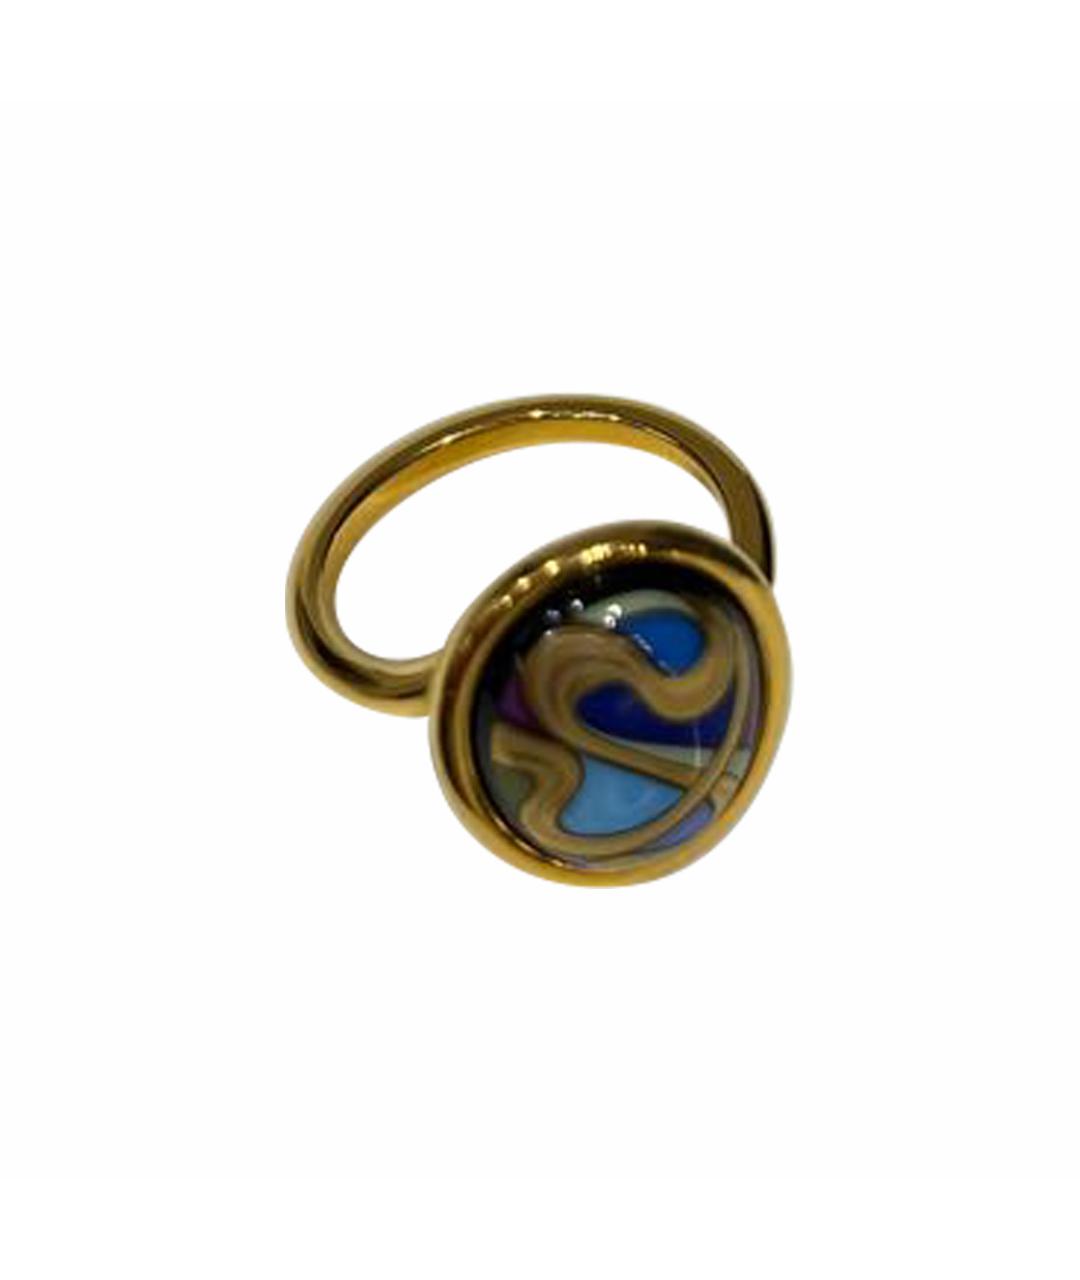 Frey Wille Синее позолоченное кольцо, фото 1